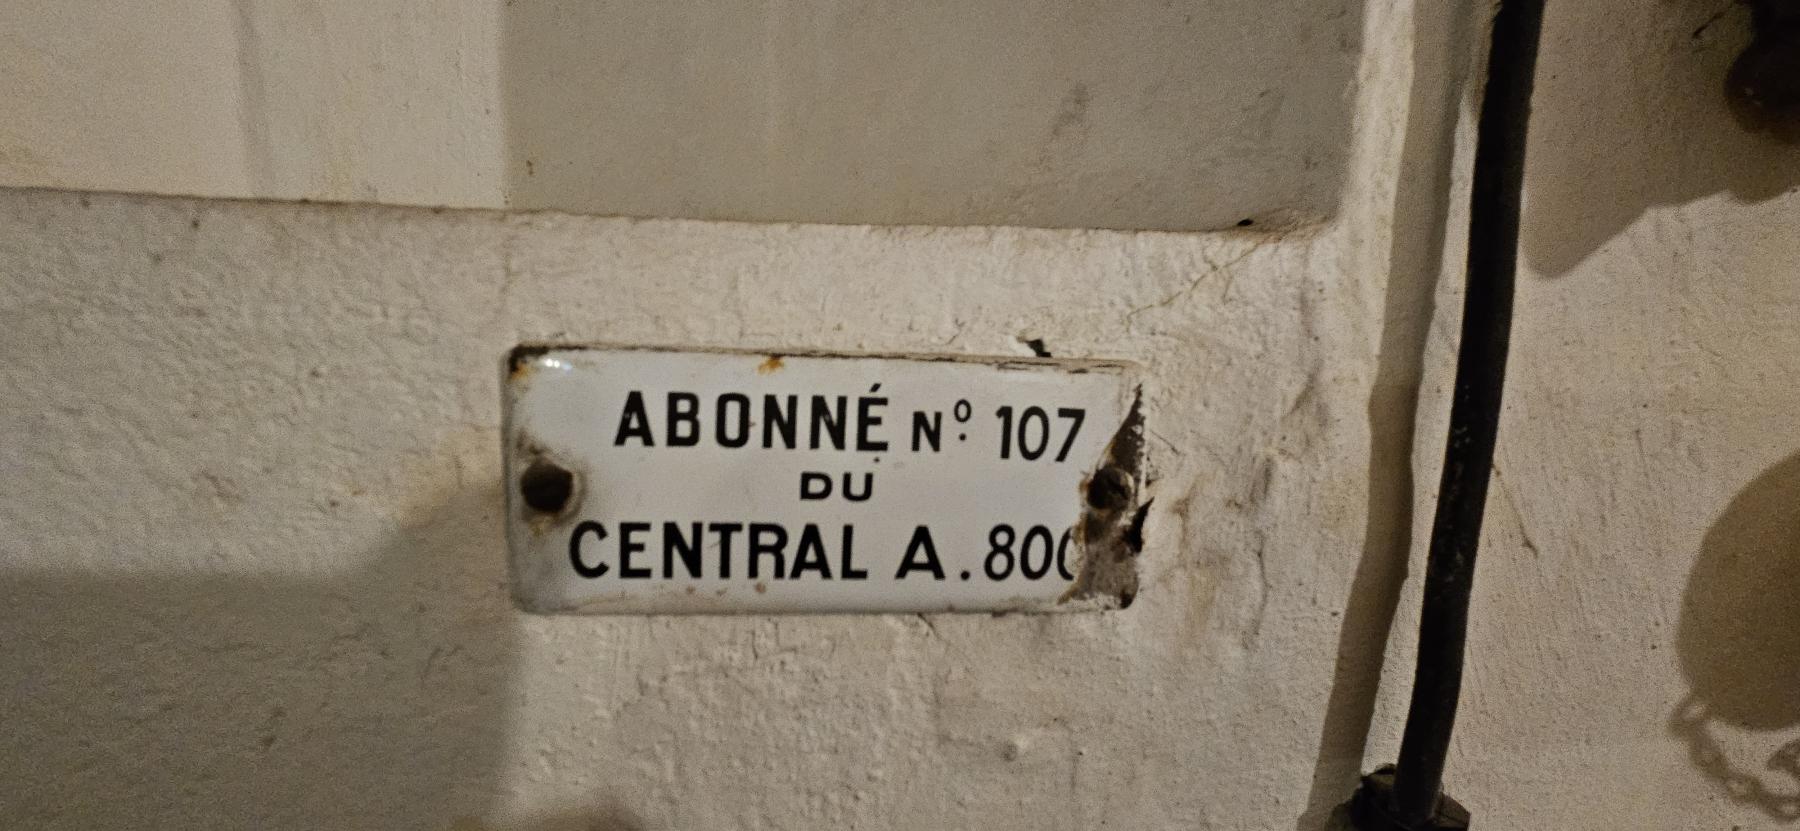 Ligne Maginot - Principe de la numérotation téléphonique dans la fortification Maginot - 